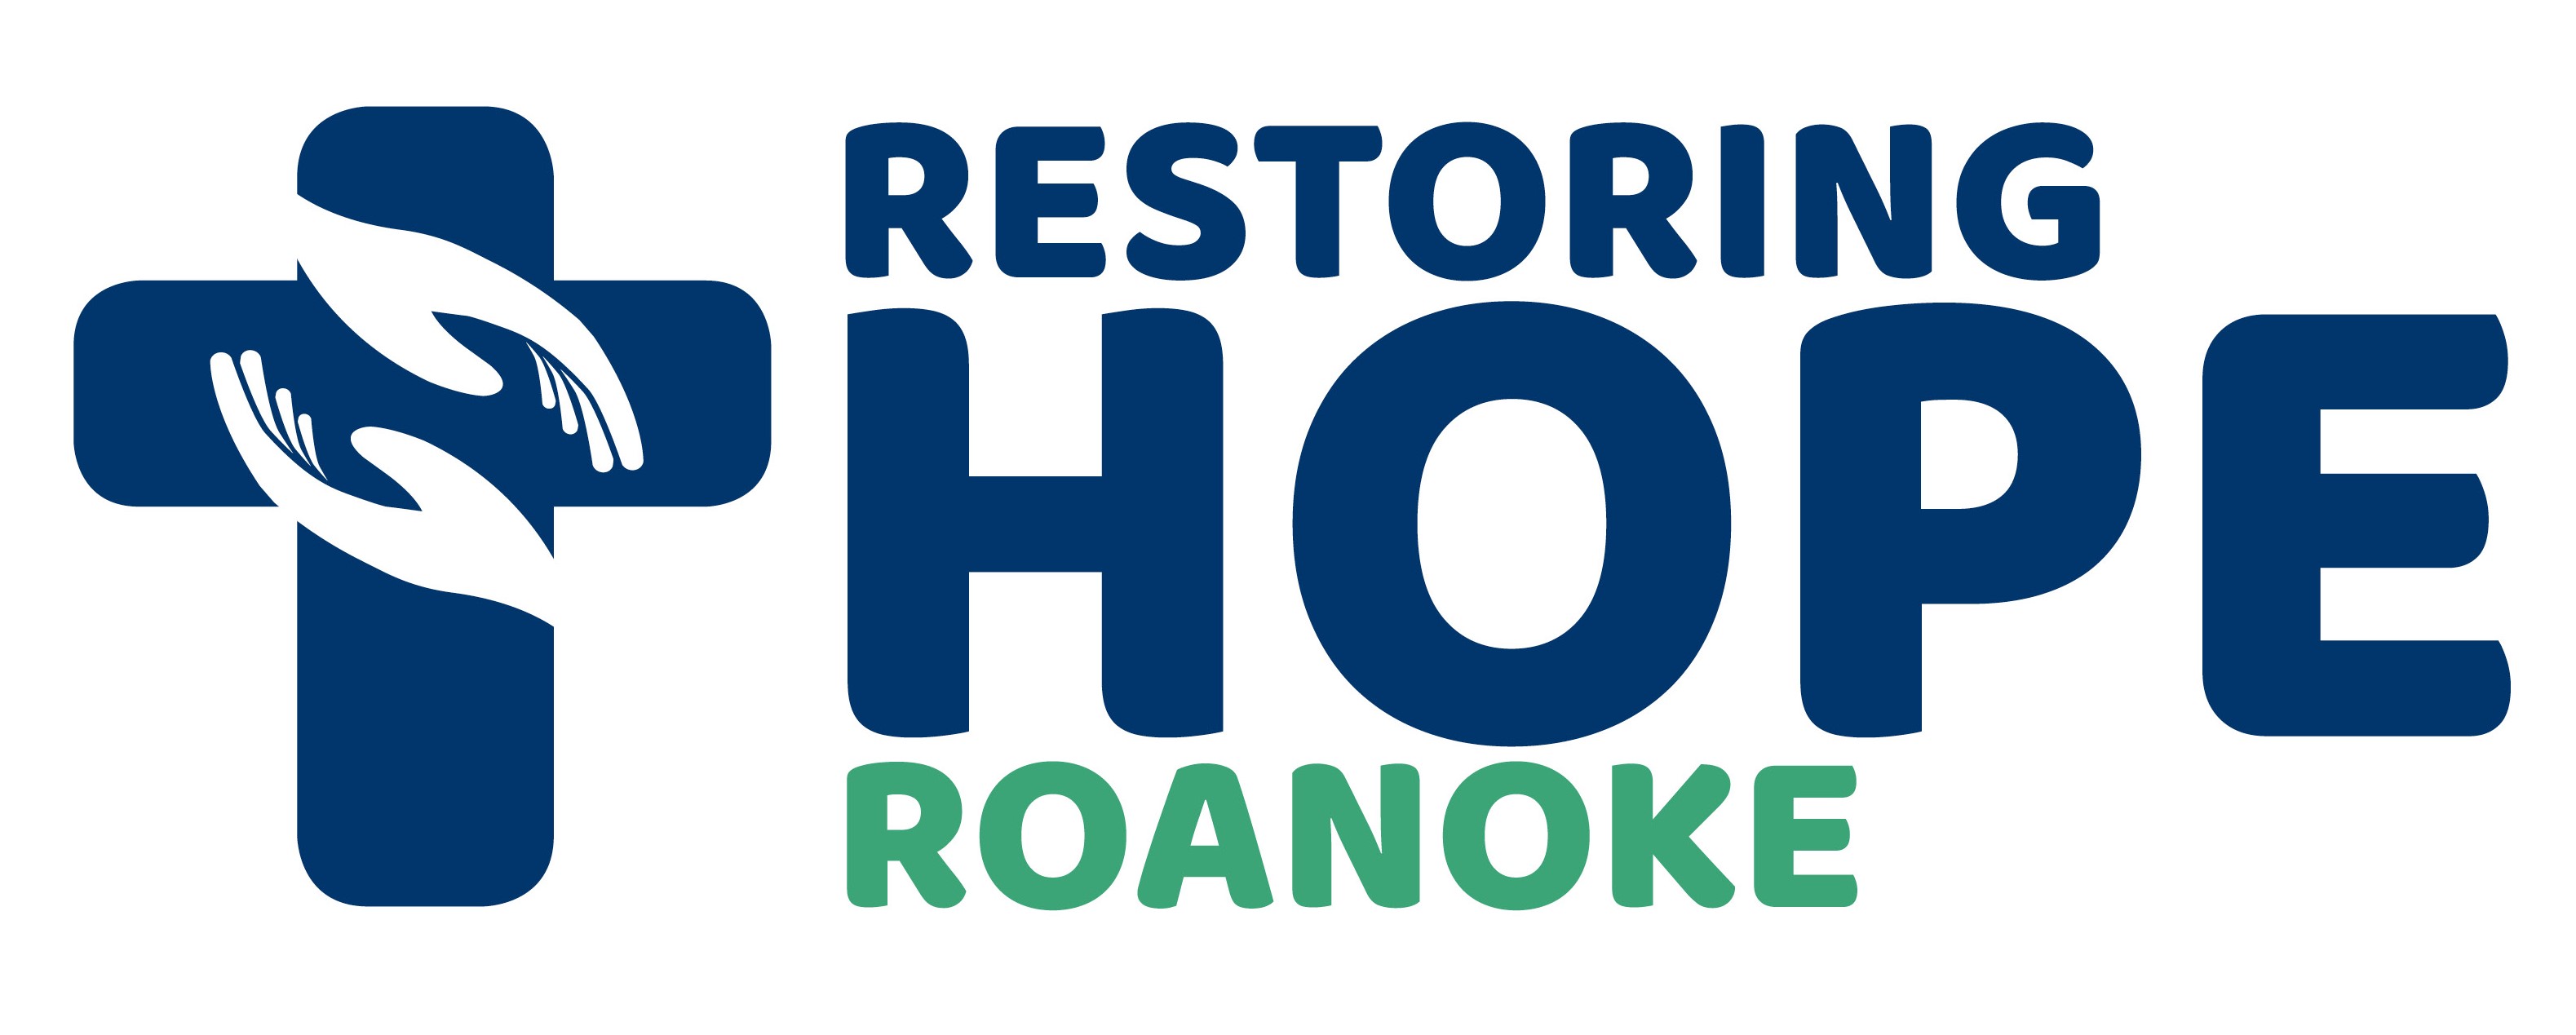 Restoring Hope Roanoke logo